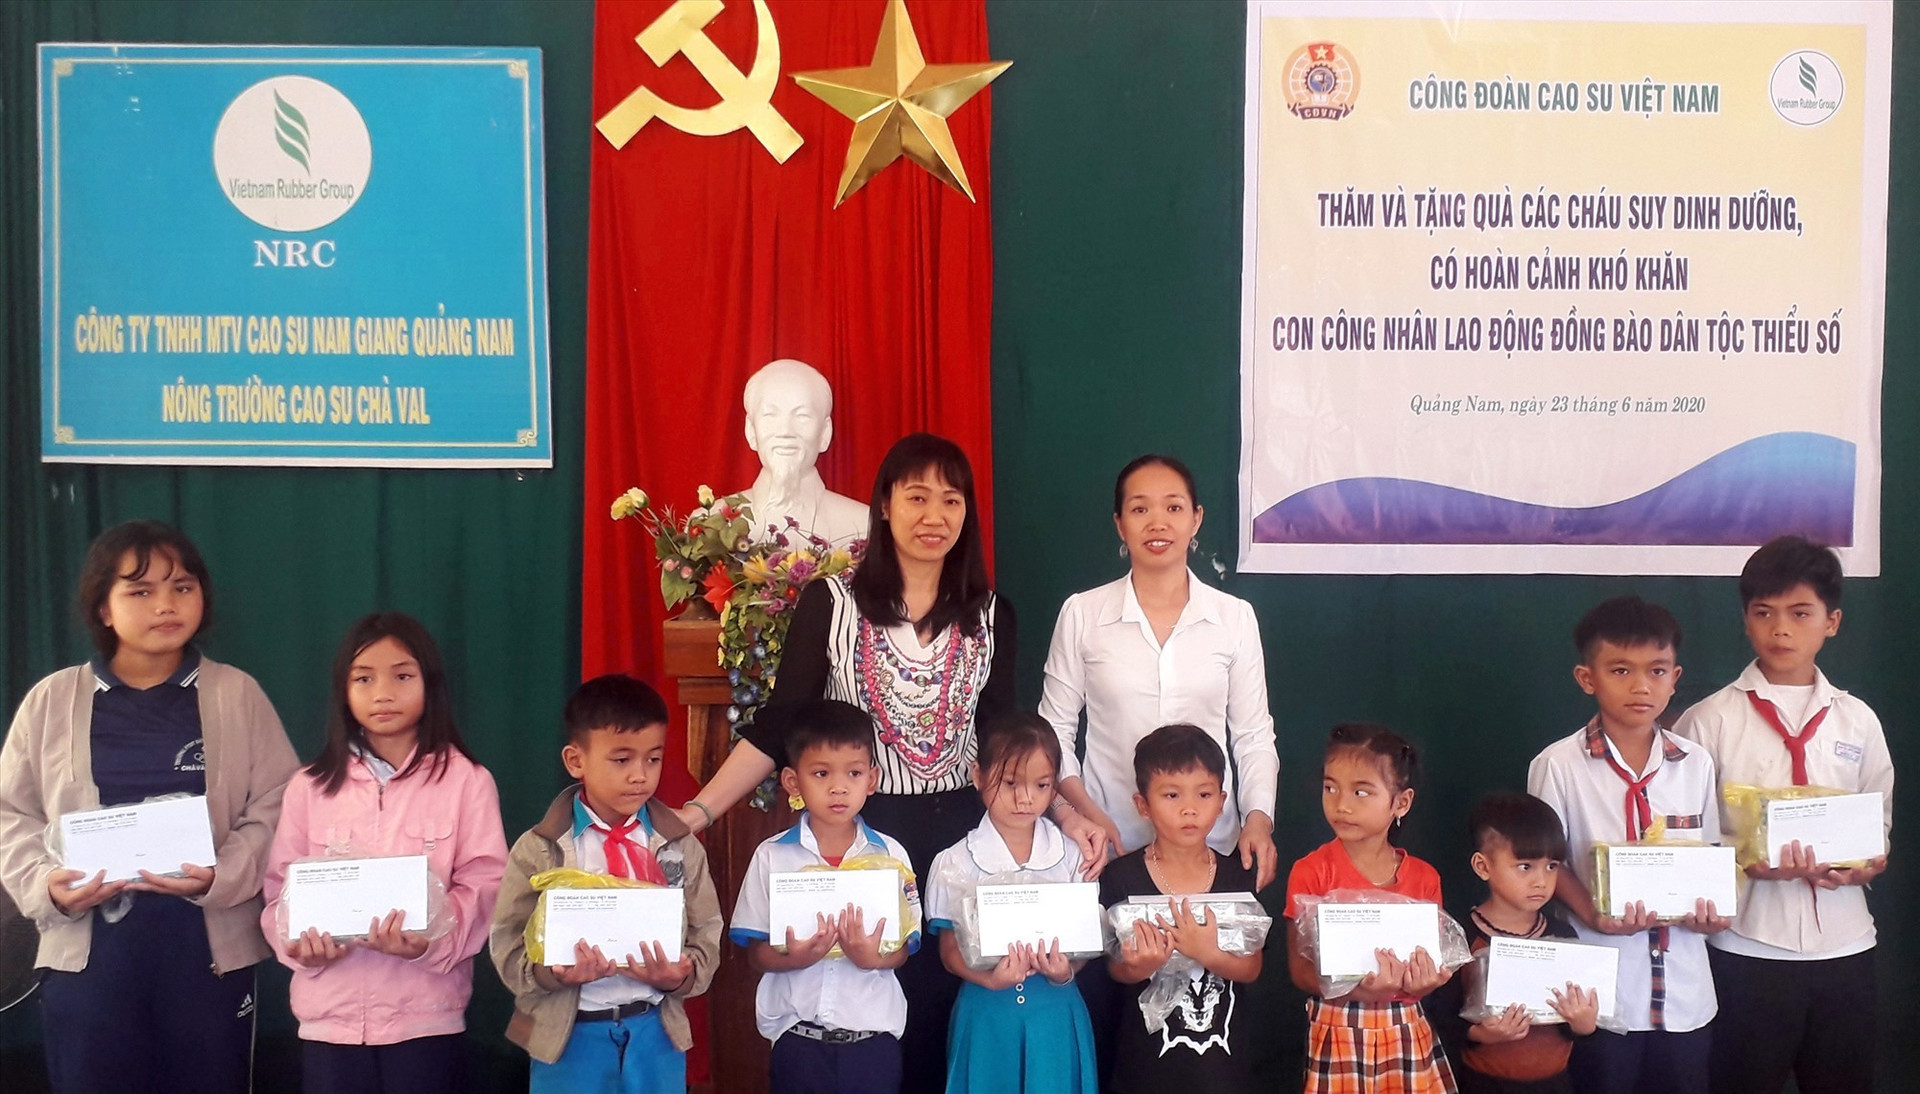 Bà Trương Thị Huế Minh - Phó Chủ tịch Công đoàn Cao su Việt Nam tặng quà cho các cháu suy dinh dưỡng, có hoàn cảnh khó khăn con công nhân lao động đồng bào dân tộc thiểu số tại nông trường Cao su Chà vàl.